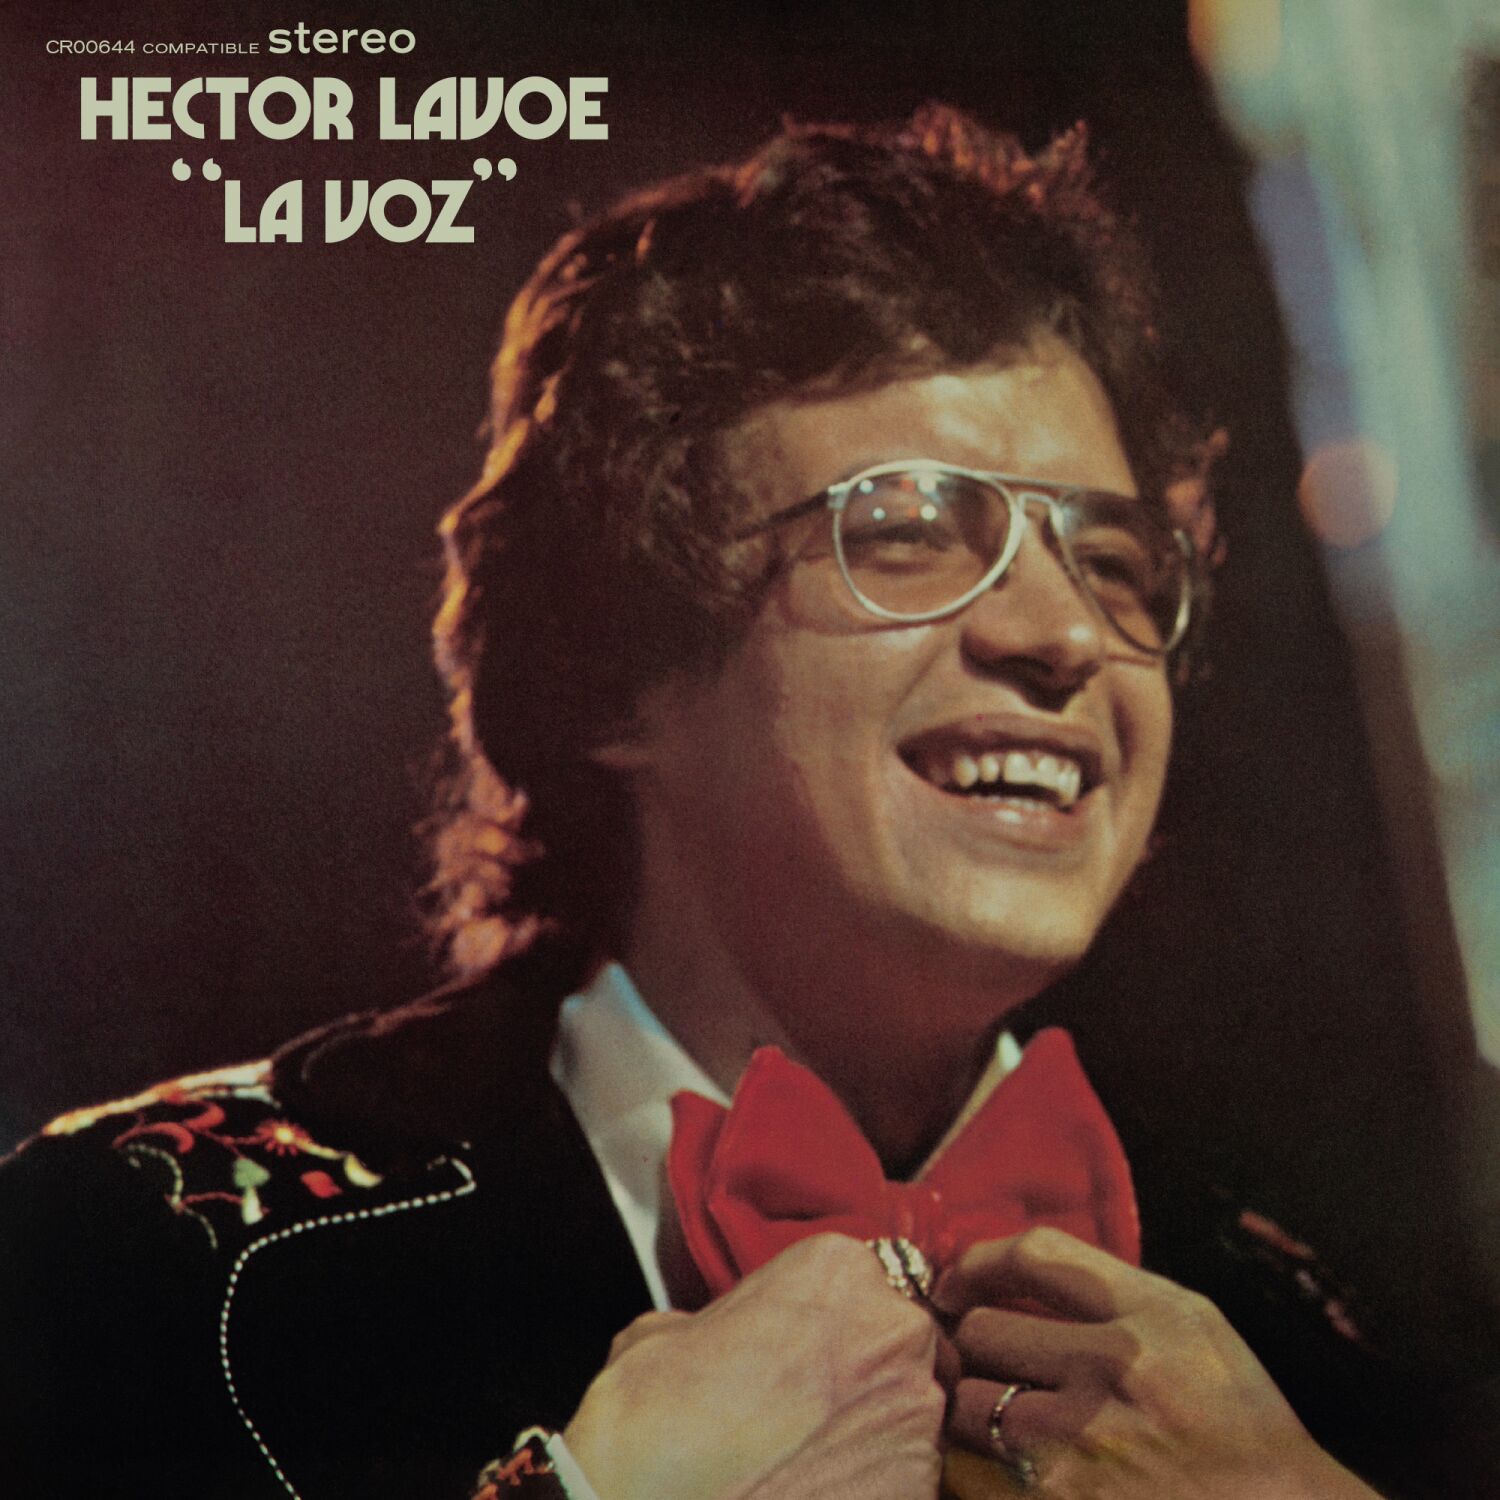 Héctor Lavoe vuelve a impresionar con su debut como solista, debidamente remasterizado